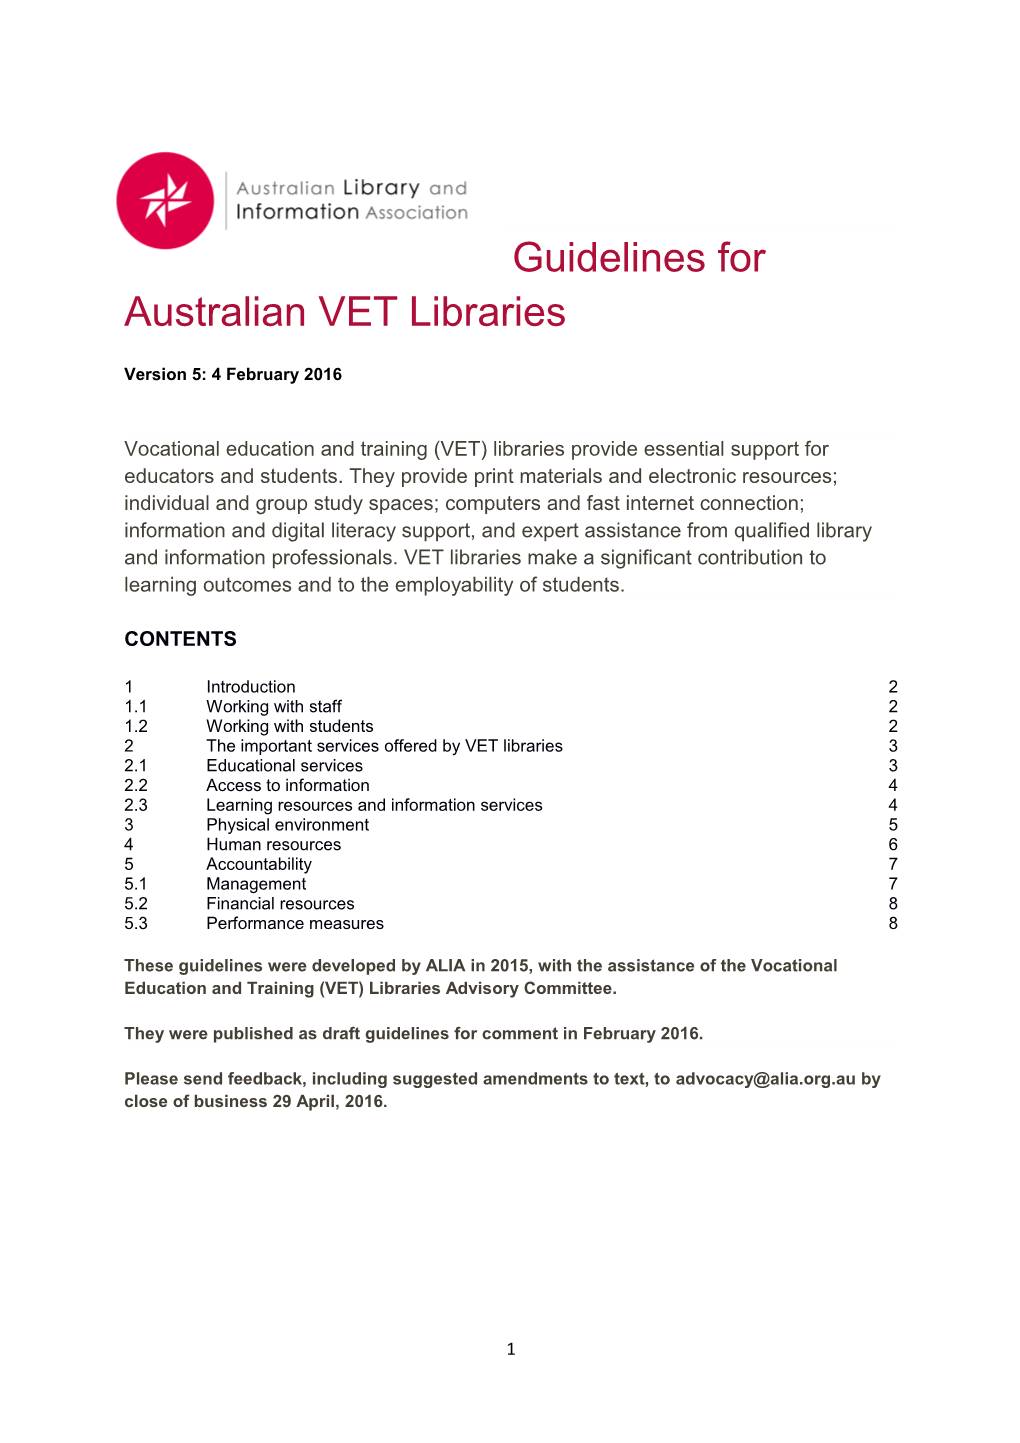 Guidelines for Australian VET Libraries